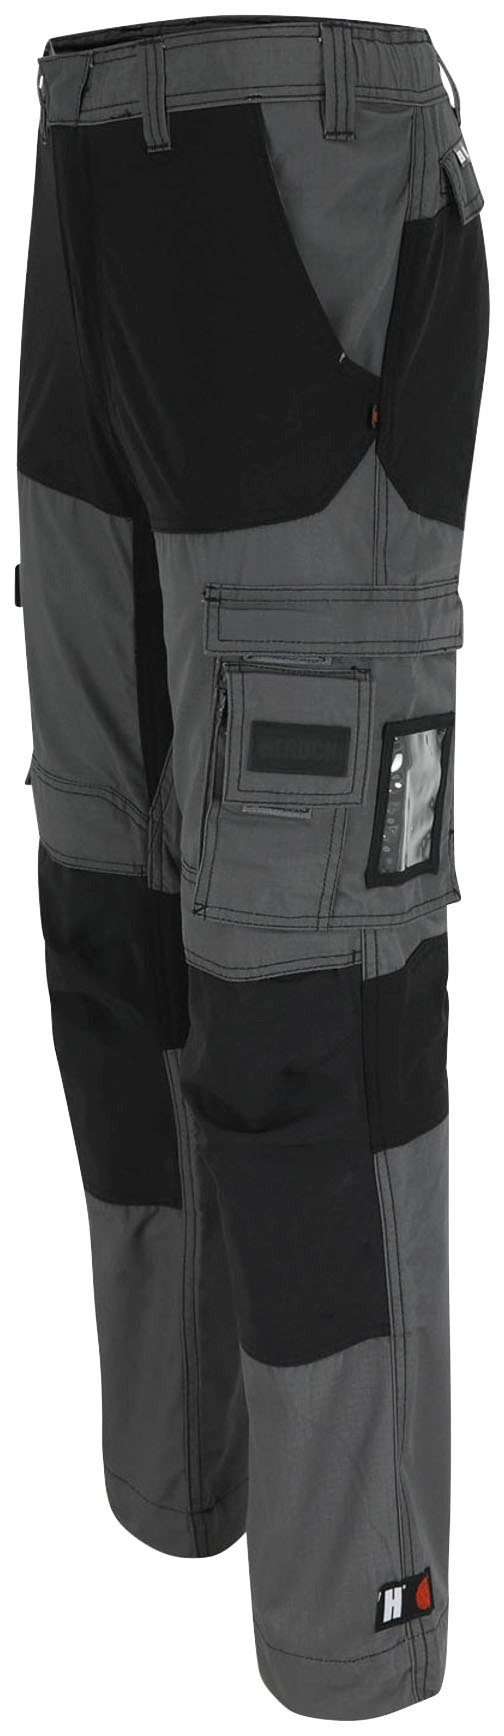 Hector verstärkte Knopf, Arbeitshose 4-Wege-Stretch, Herock grau Multi-Pocket, Knietaschen verdeckter Hoses